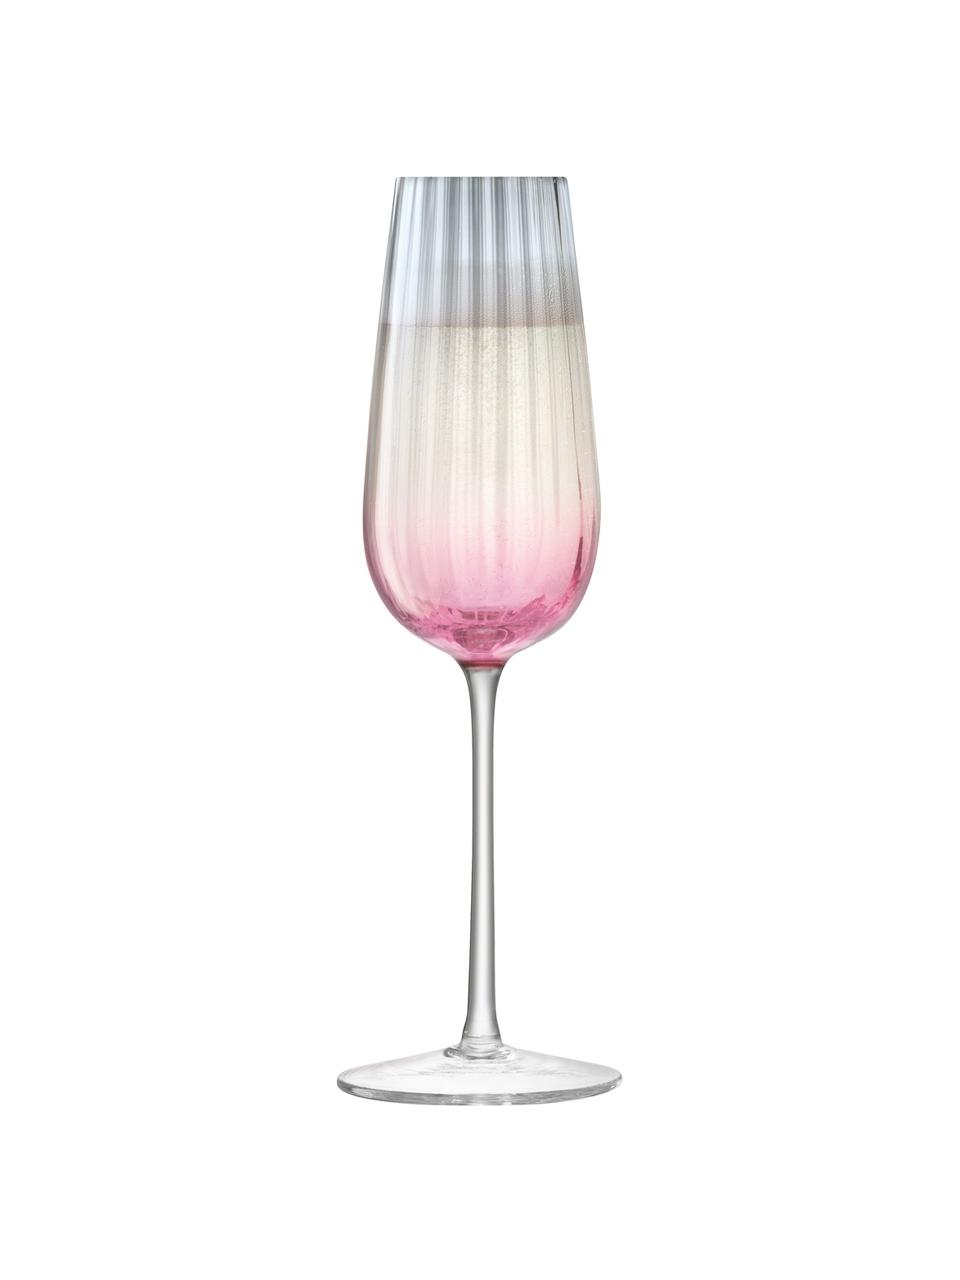 Bicchieri champagne fatti a mano con gradiente Dusk 2 pz, Vetro, Rosa, grigio, Ø 6 x Alt. 23 cm, 250 ml